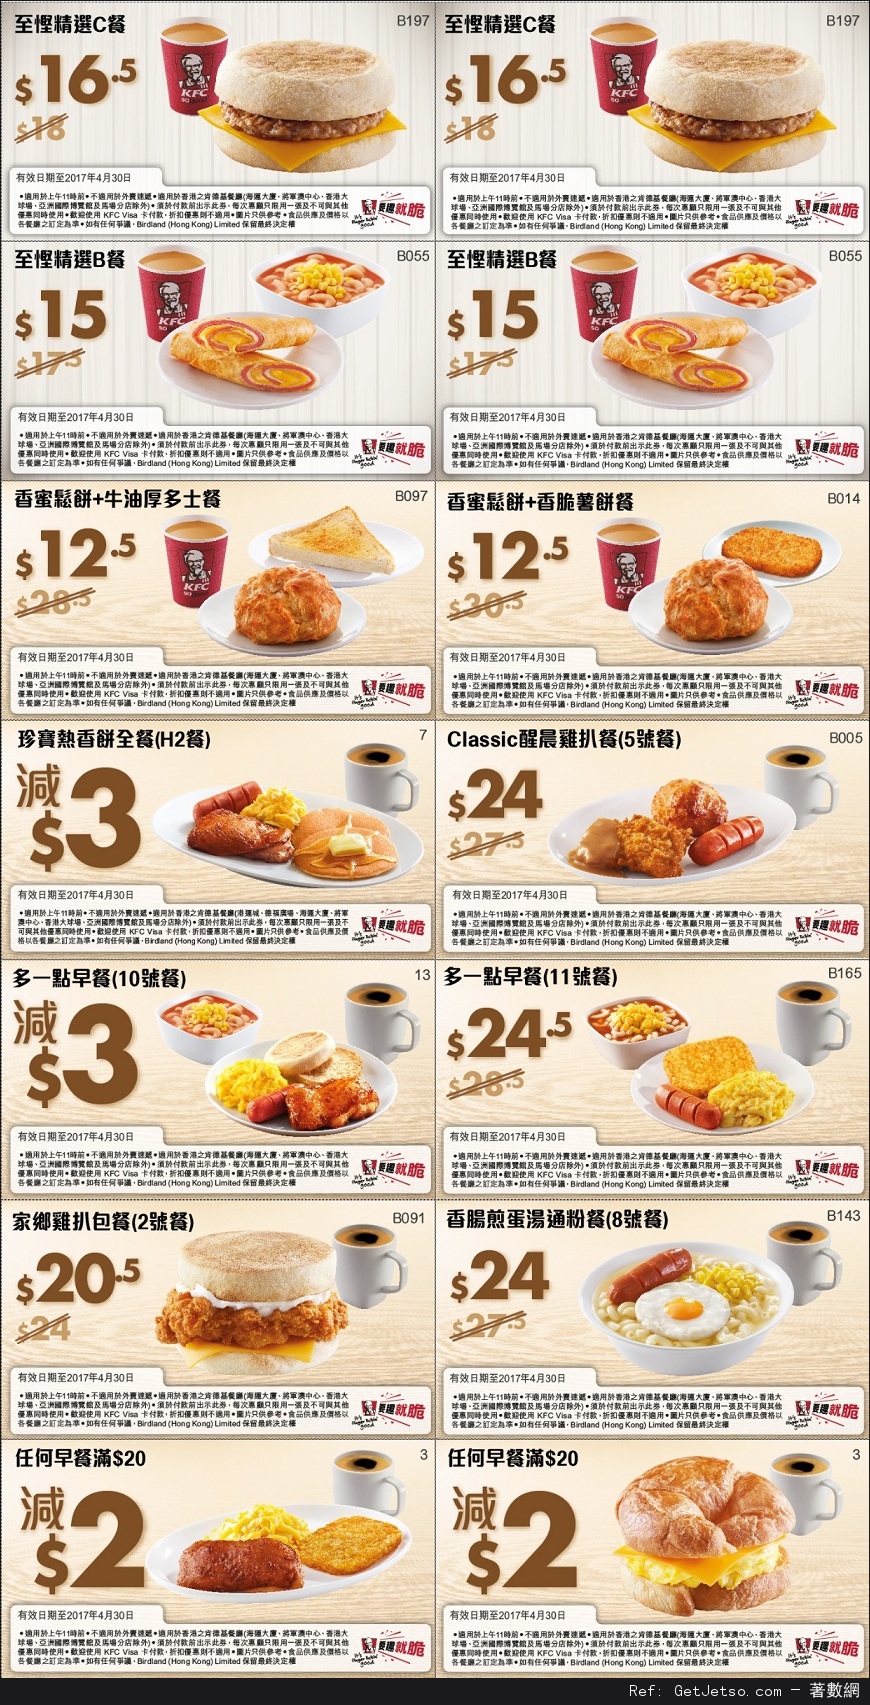 KFC 肯德基早餐優惠券(至17年4月30日)圖片1